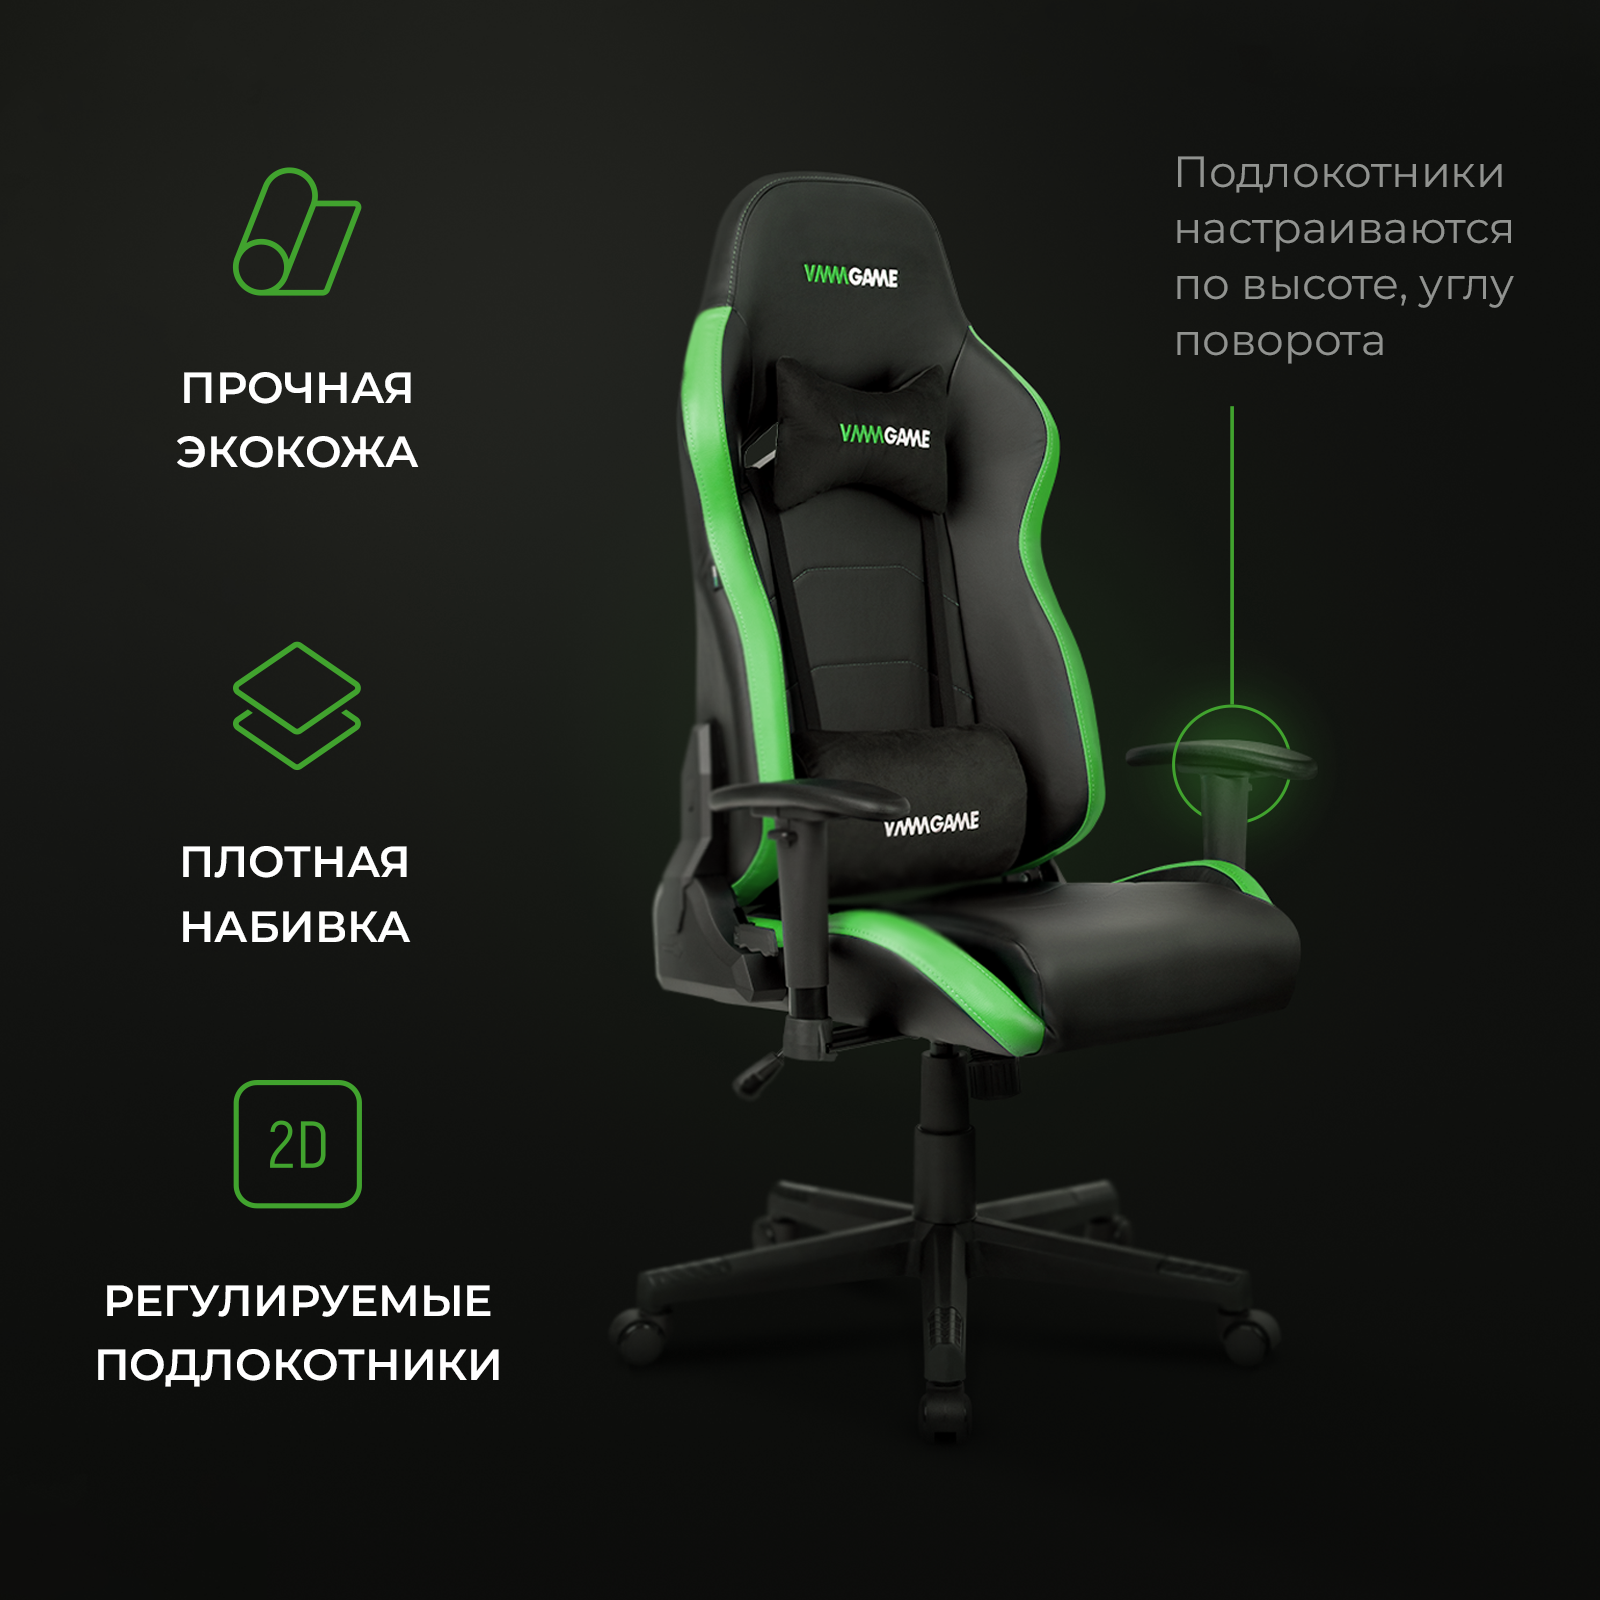 Игровое компьютерное кресло VMMGAME ASTRAL Малахитово - зелёный